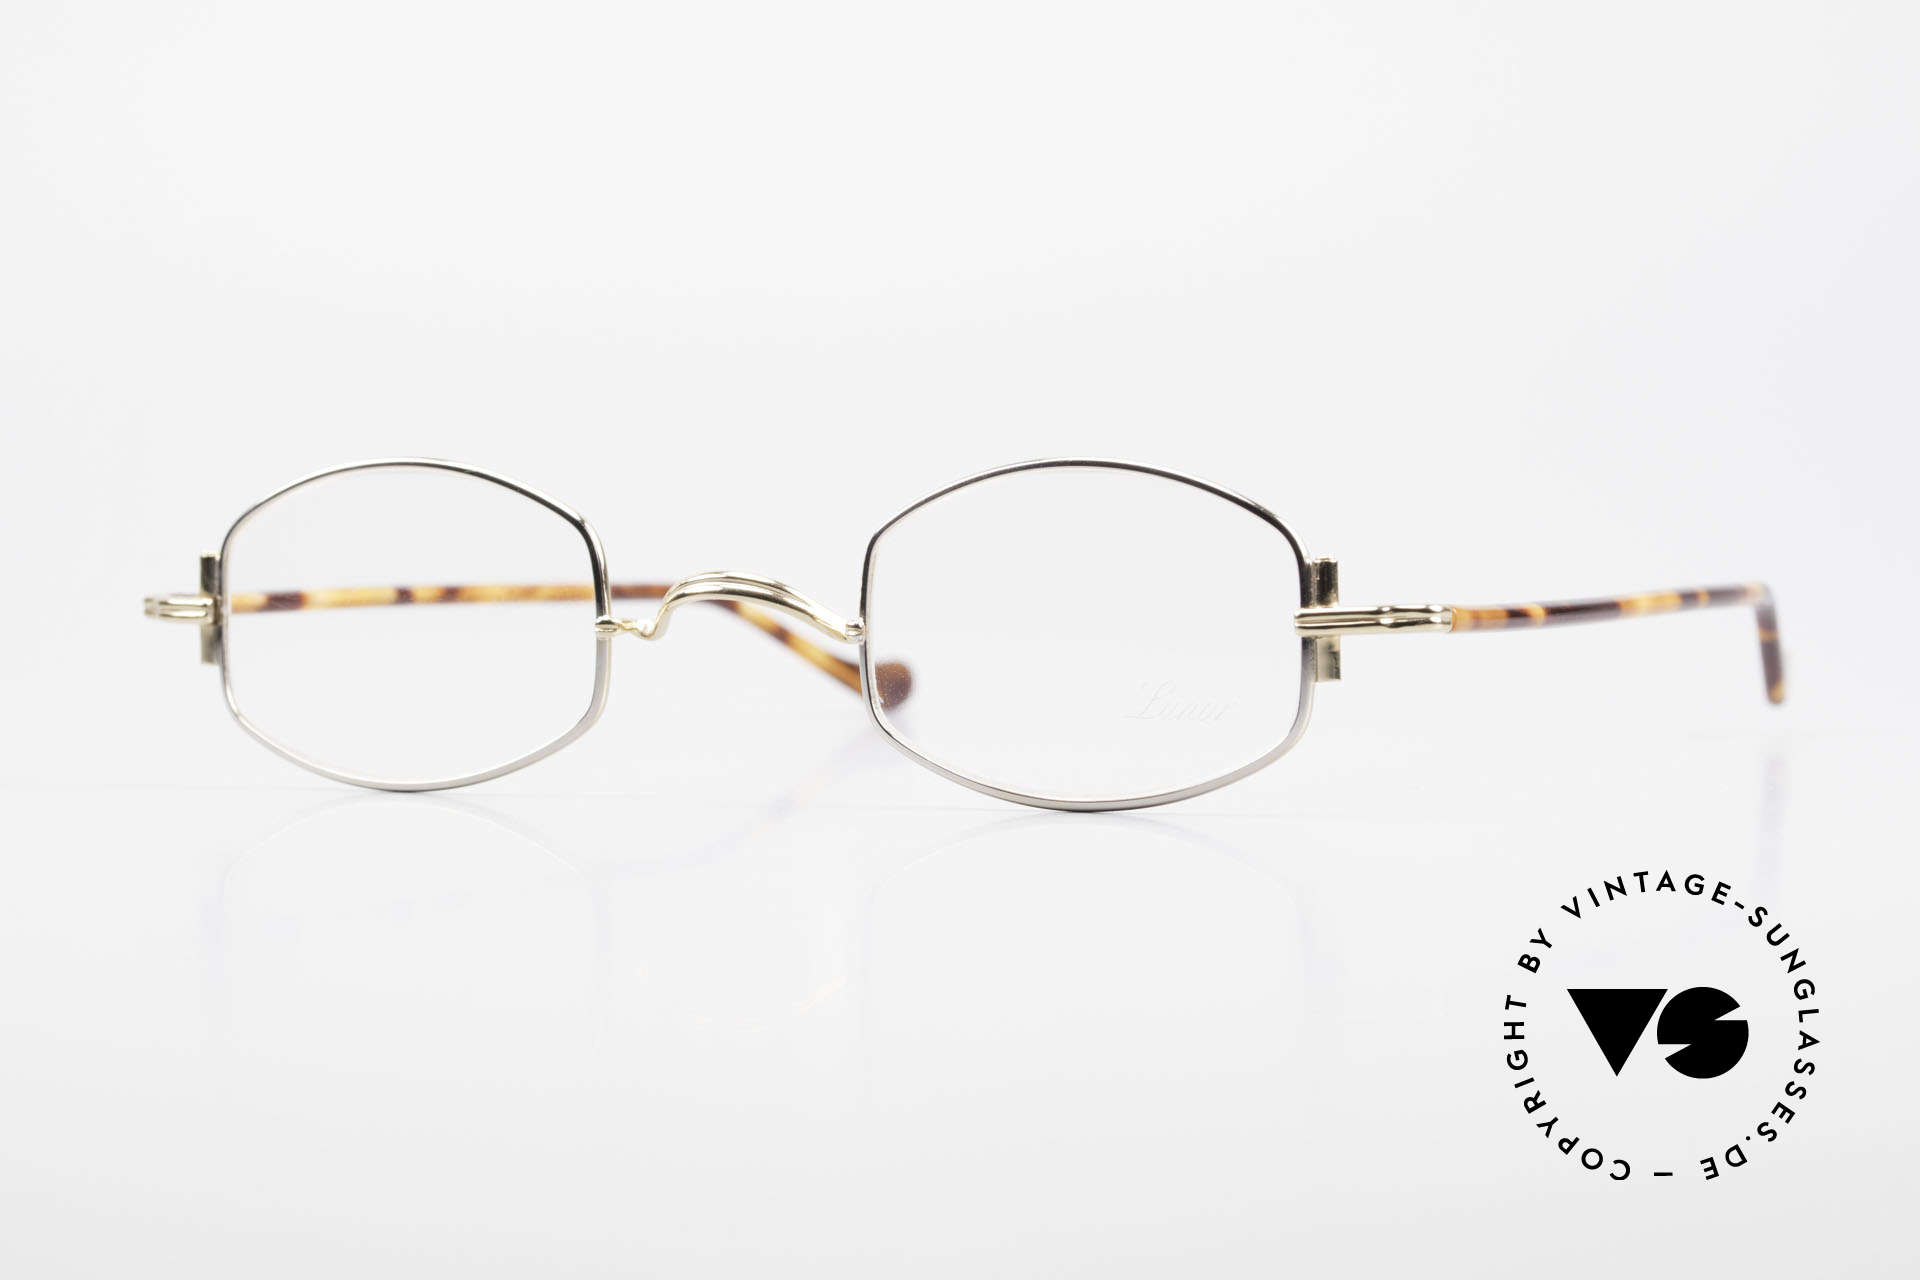 Lunor XA 03 Lunor Brille No Retro Vintage, minimalistische Lunor Brille der Lunor "X"-Baureihe, Passend für Herren und Damen